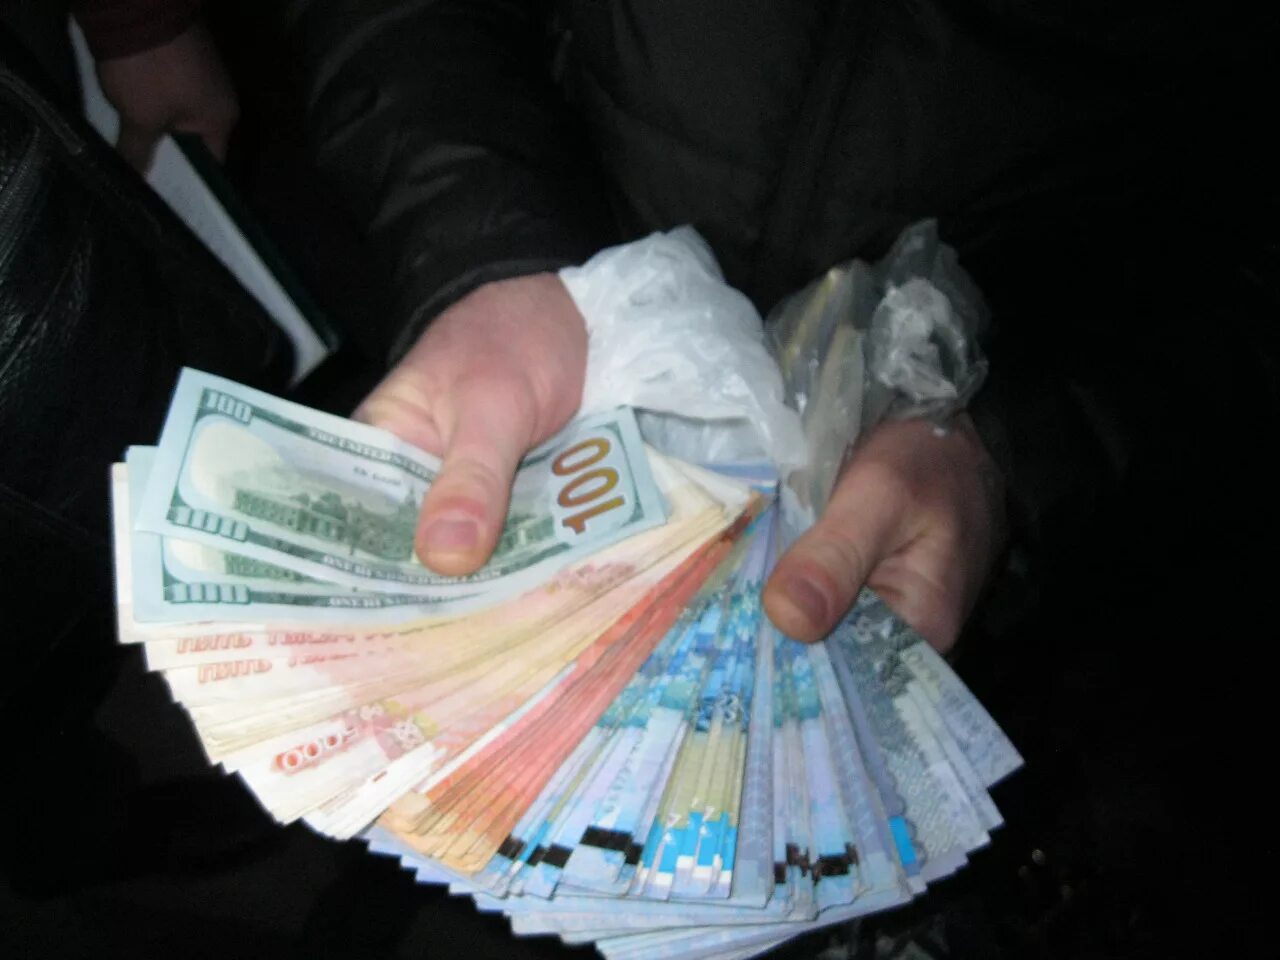 7 000 тенге в рублях. Пачка казахстанских денег в руке. Пачка денег в руках. Миллион денег. Пачки денег тенге.